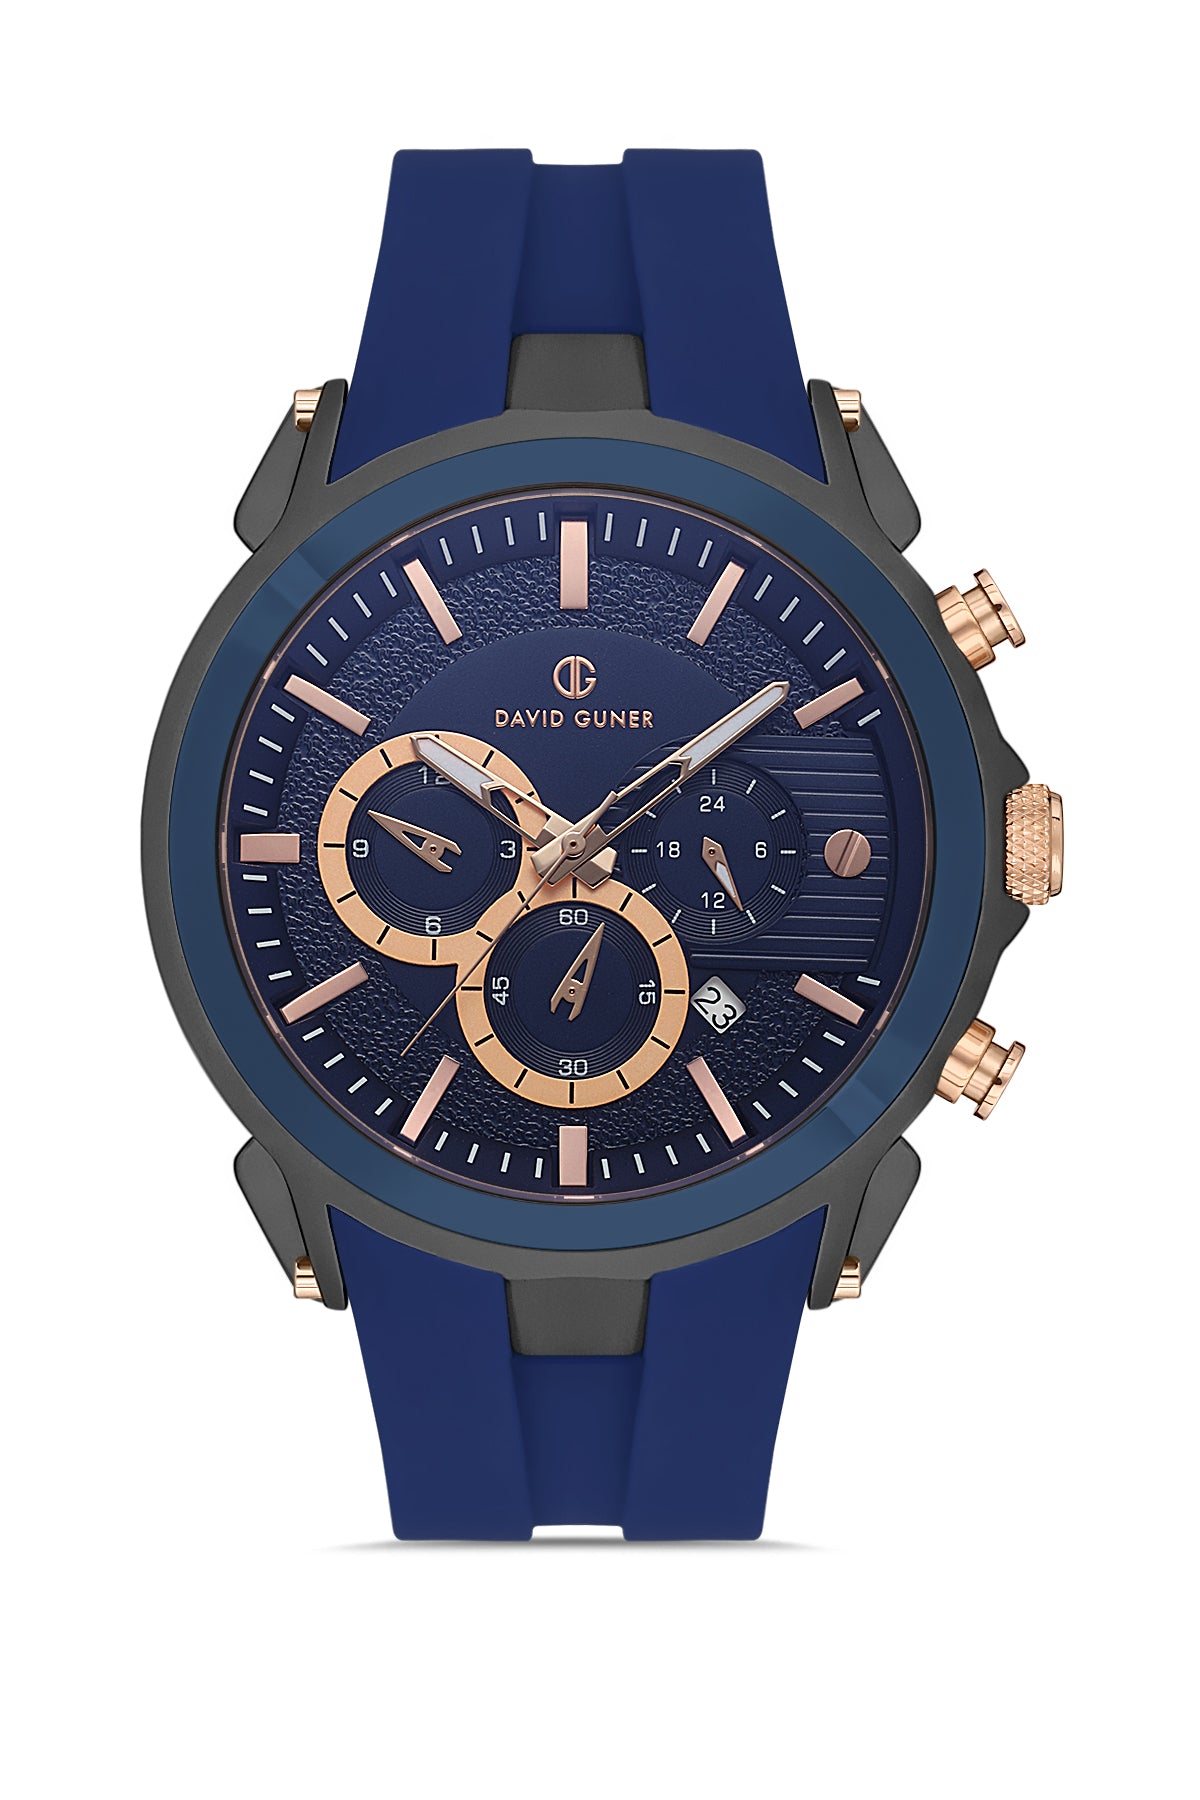 David Guner Blue Gun Plated Men's Wristwatch with Silicone Strap